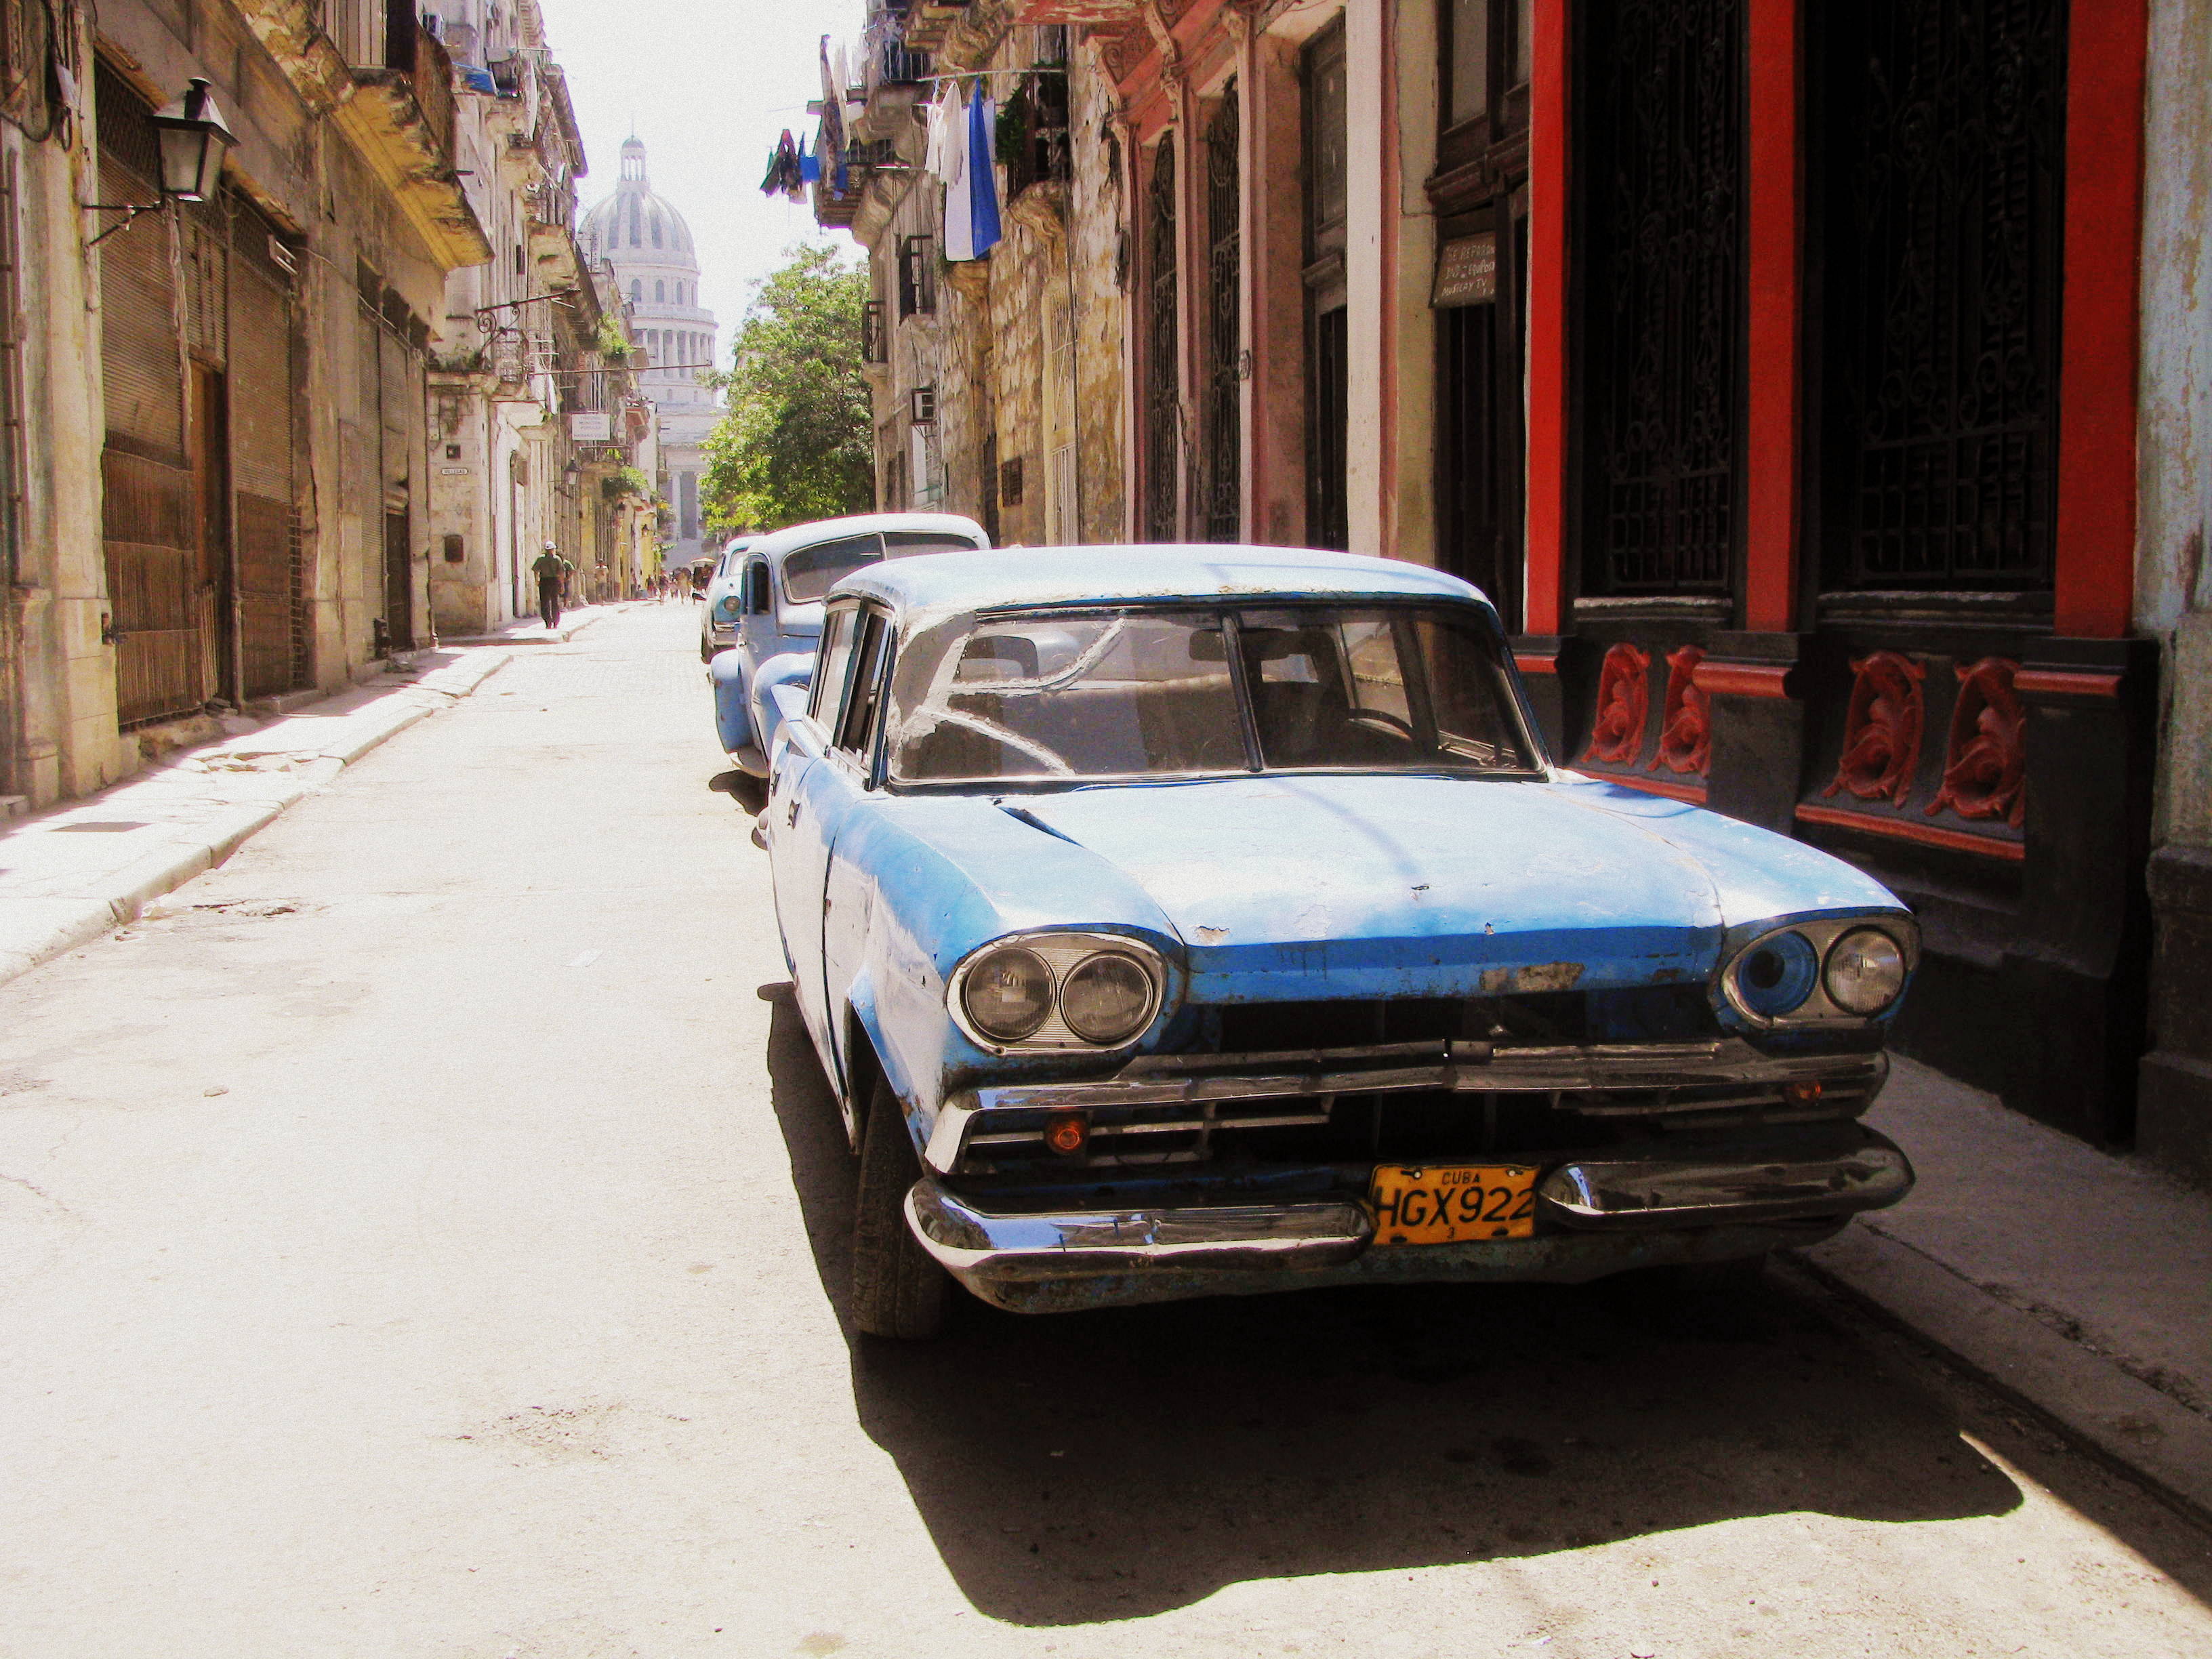 Museo de Carros Clásicos en las calles de la Habana. 